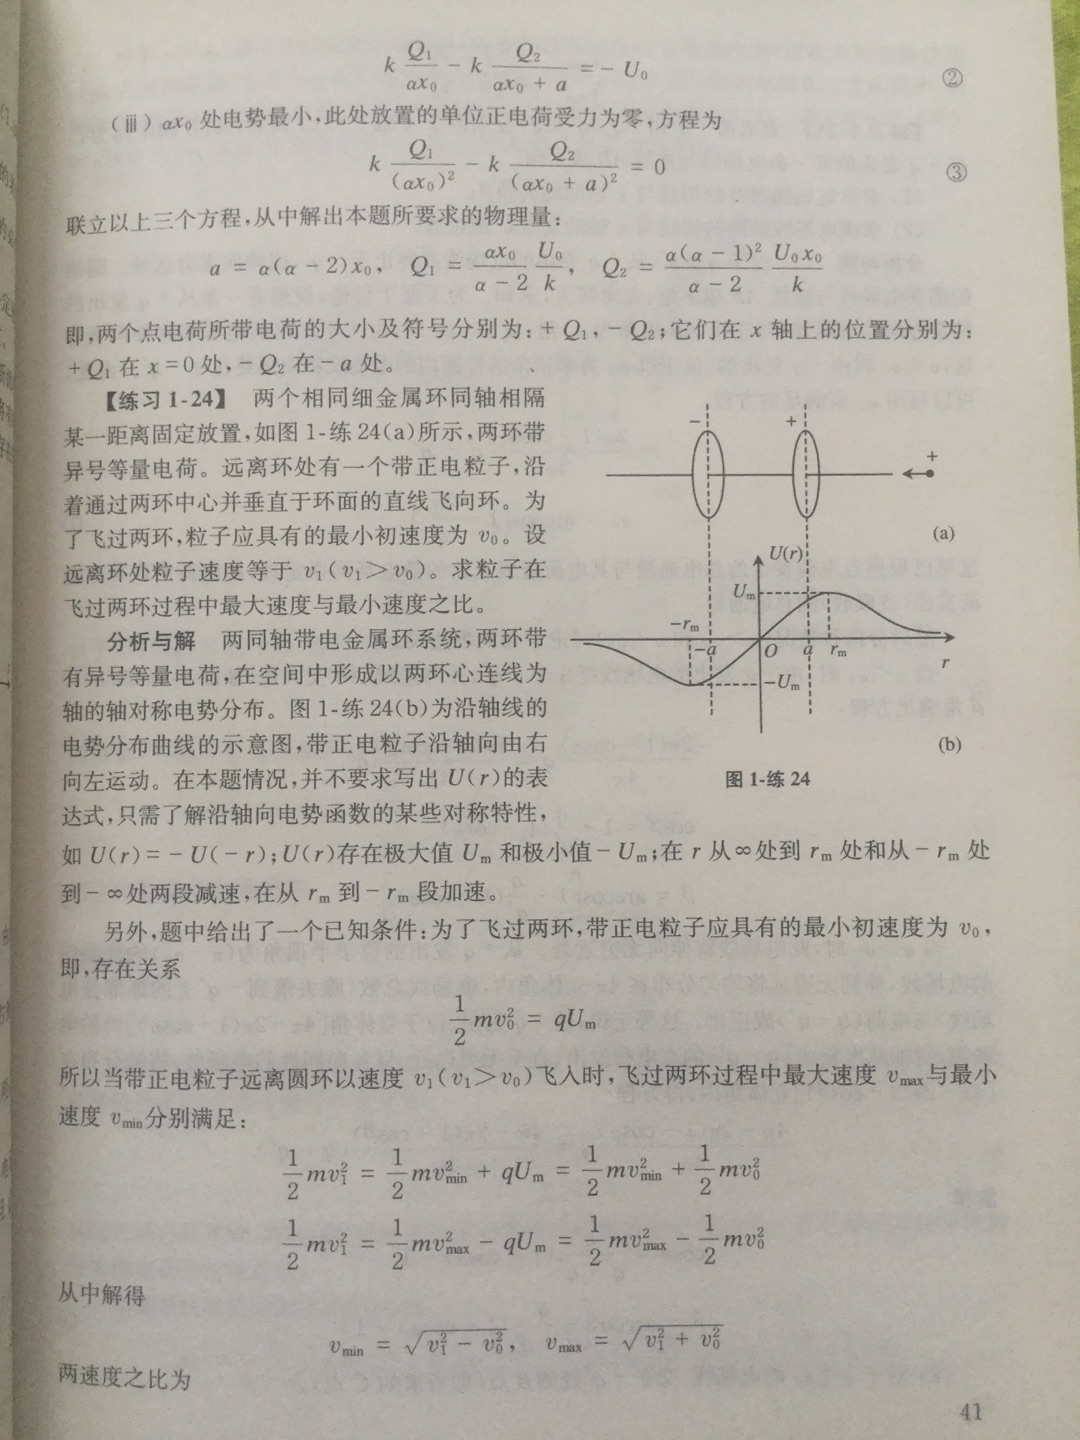 老师推荐的物理竞赛辅导书，内容确实不错，涉及到大学里电学磁学基本知识推导